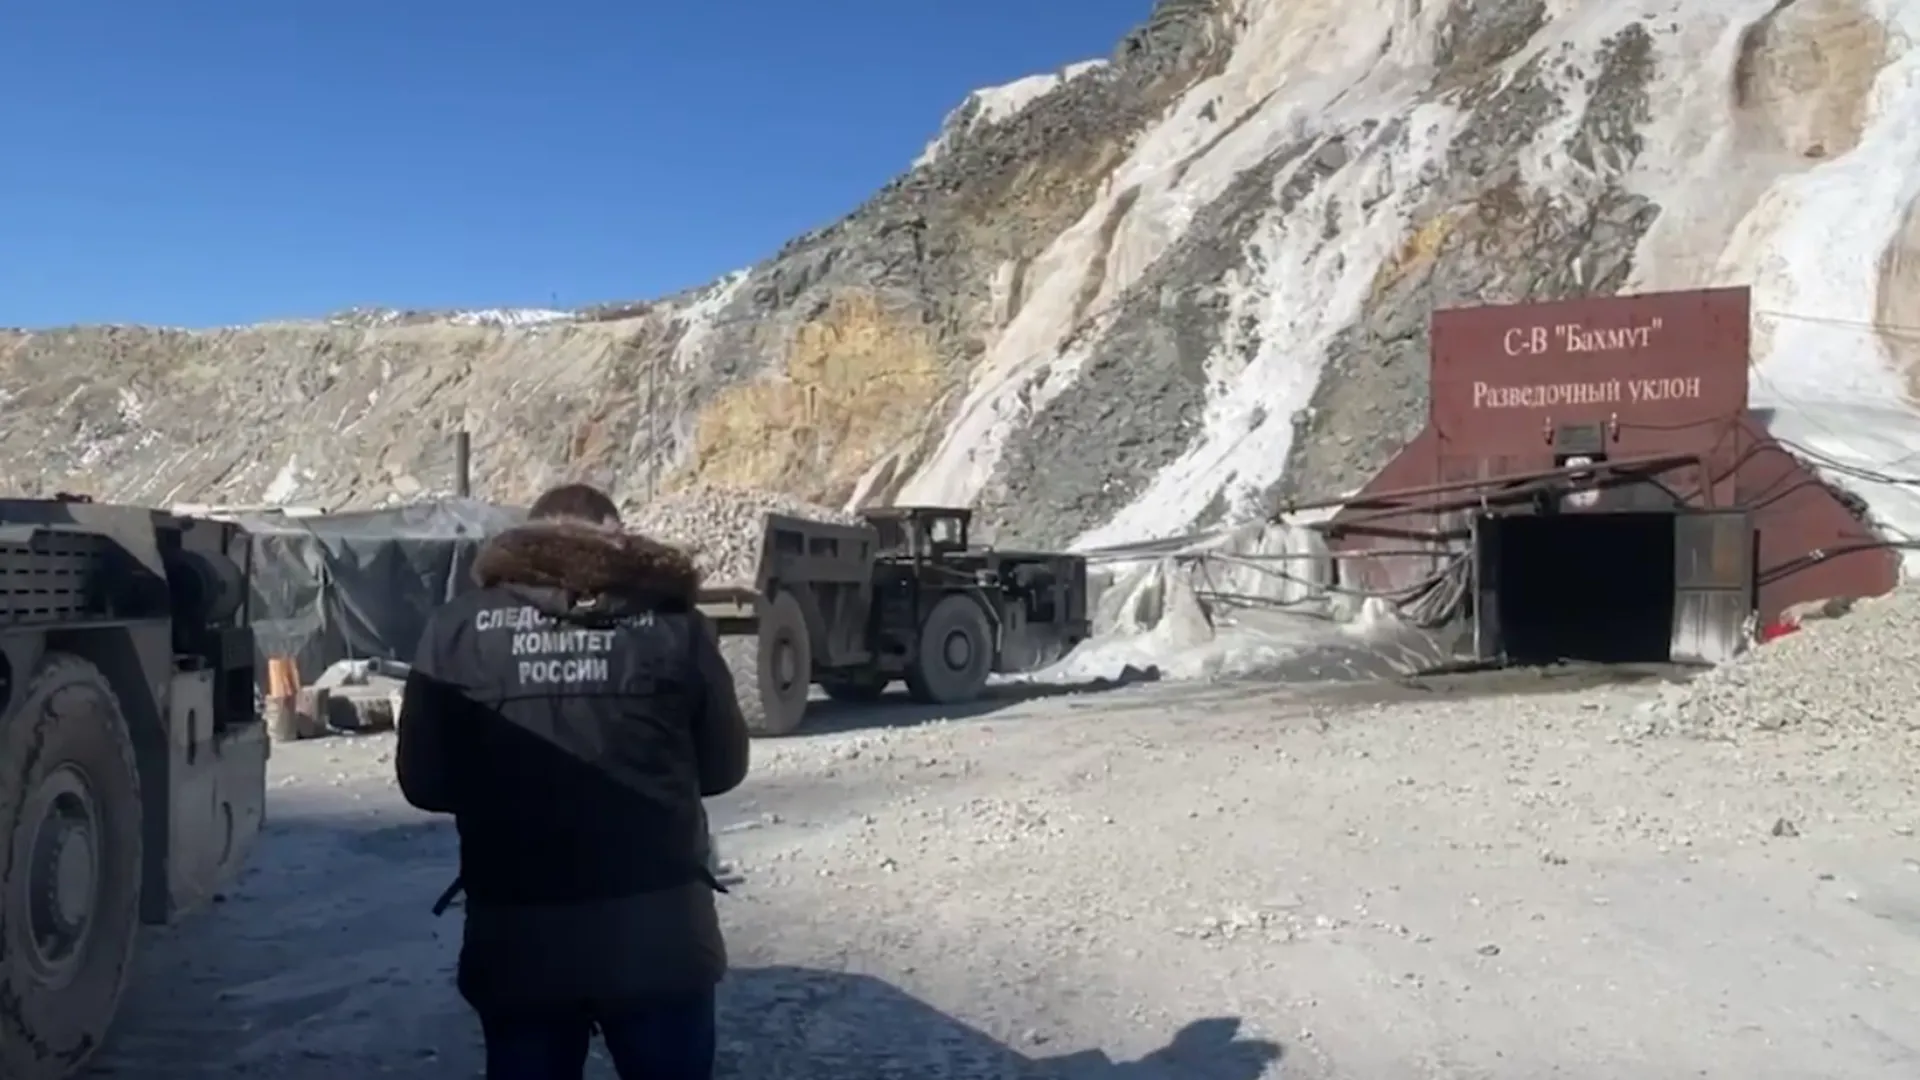 Спасатели начали бурение третьей скважины на руднике «Пионер» в Приамурье